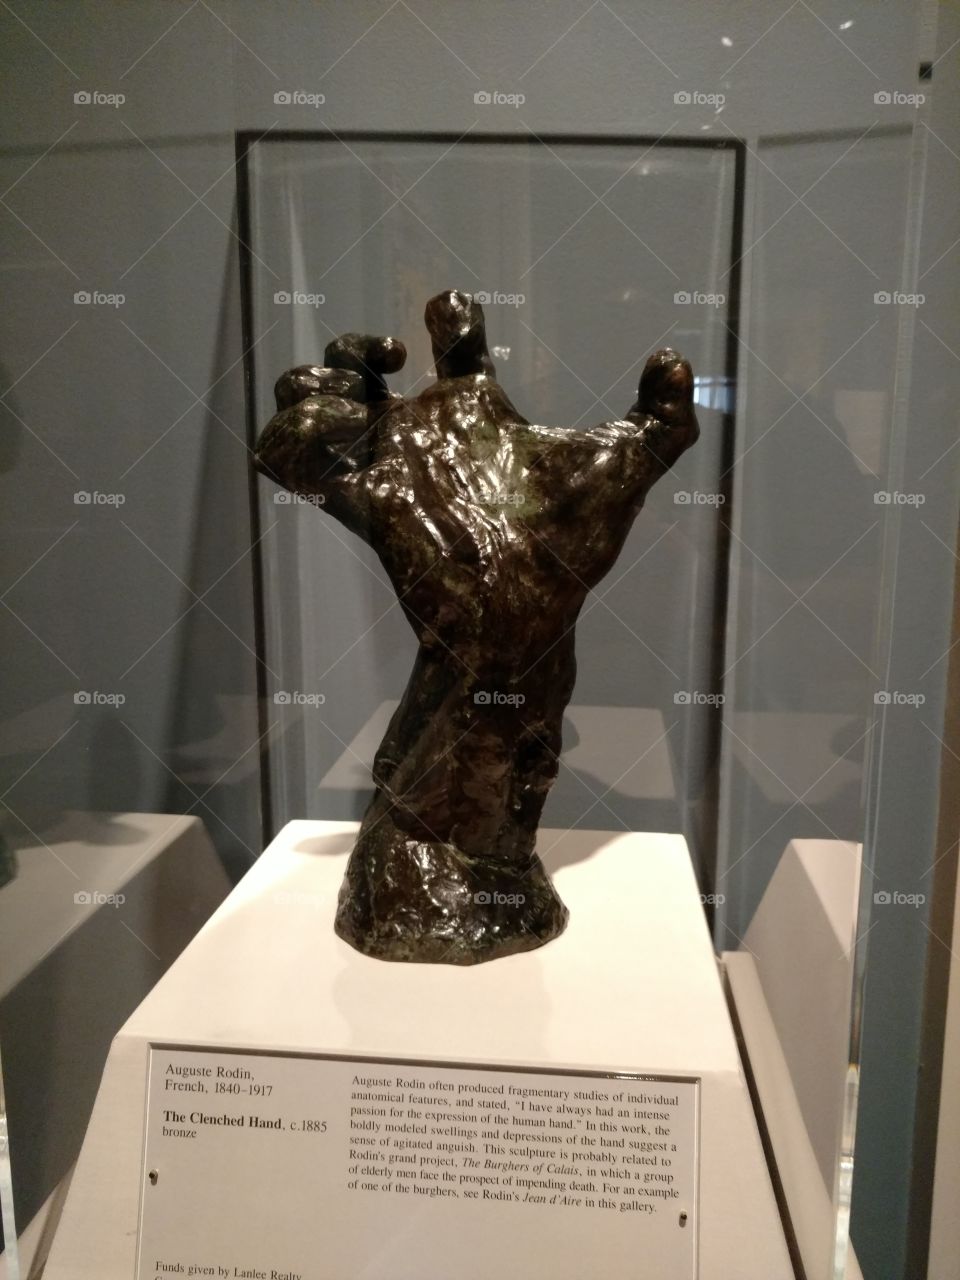 gripping sculpture